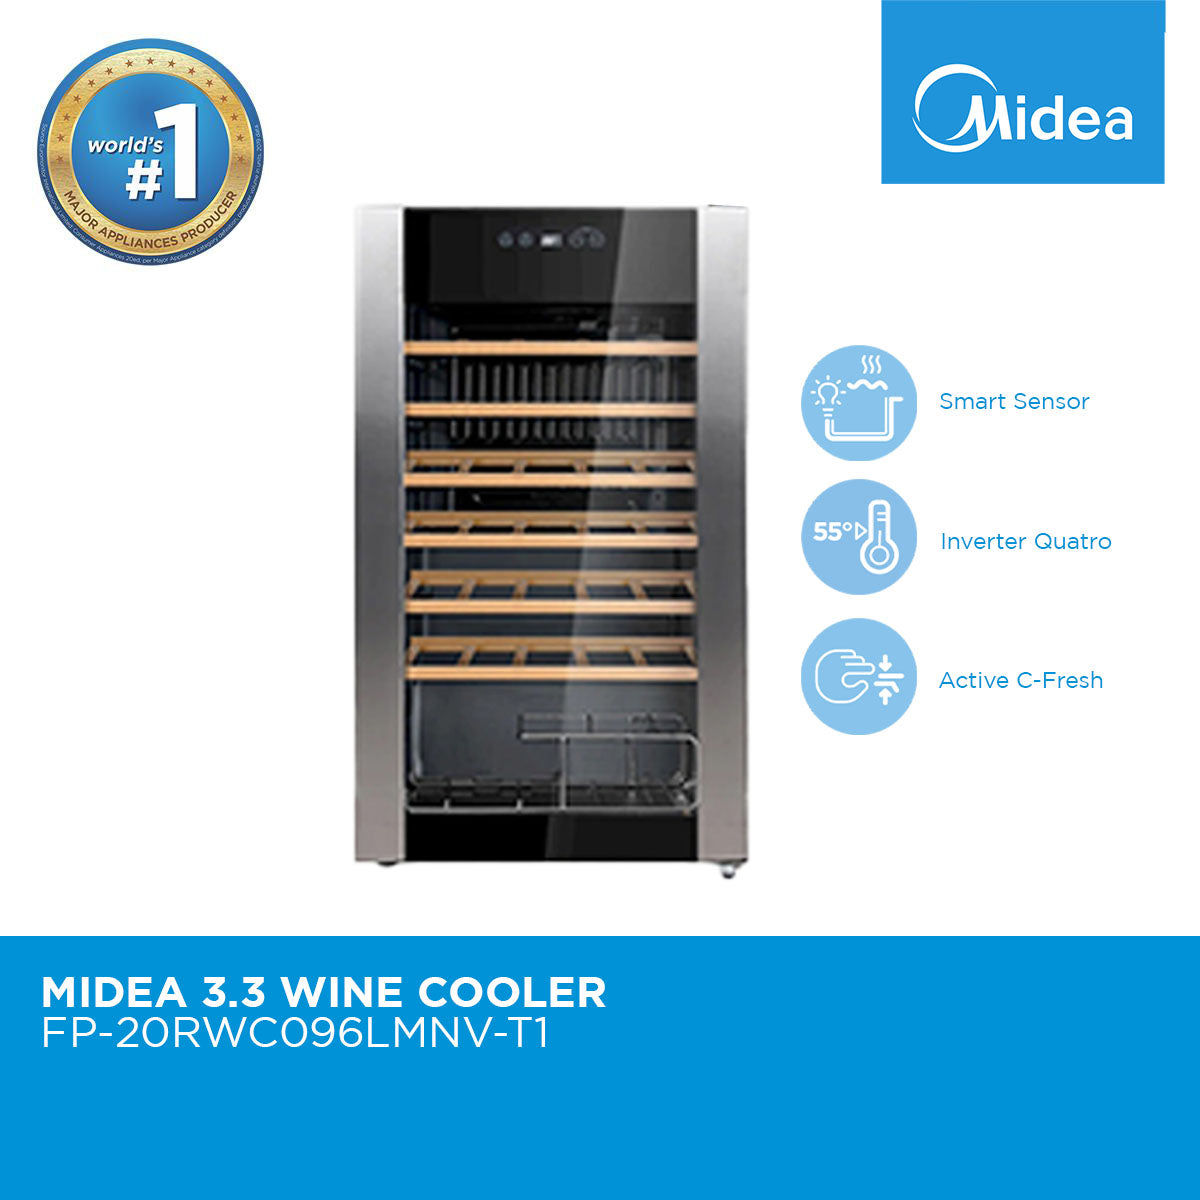 Midea Wine Cooler 3.3 cuft